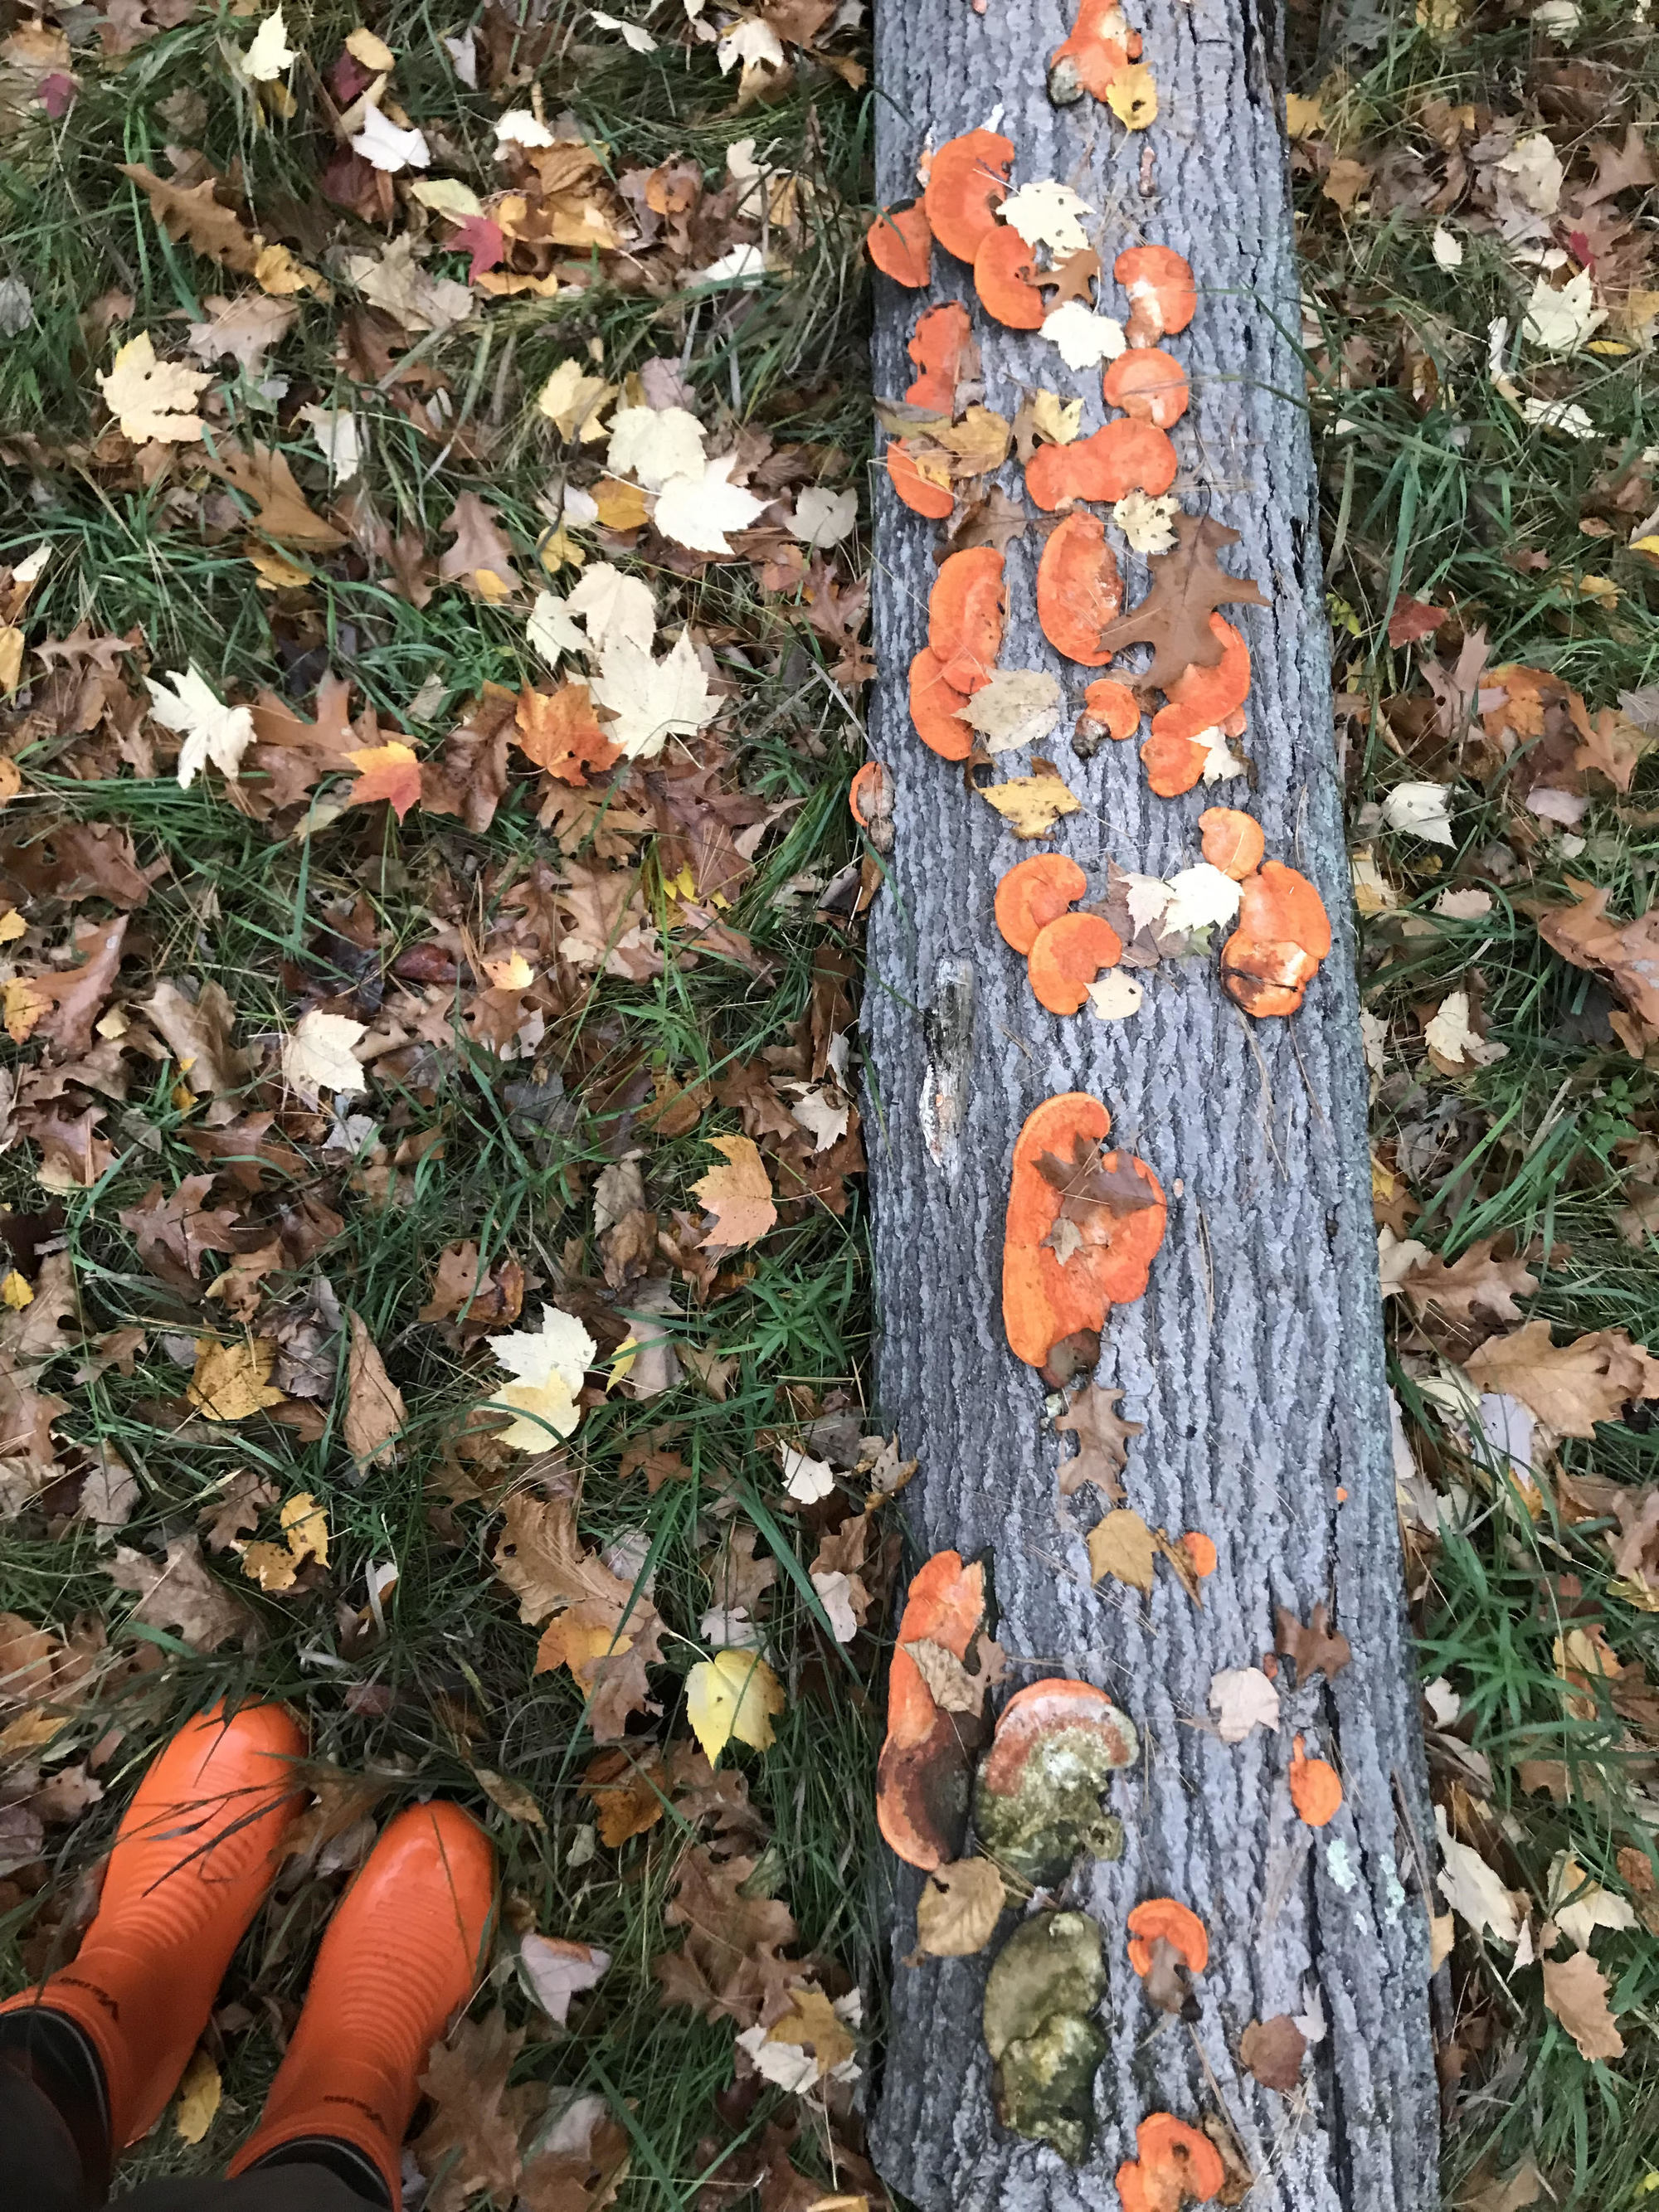 Orange boots and orange mushrooms on log